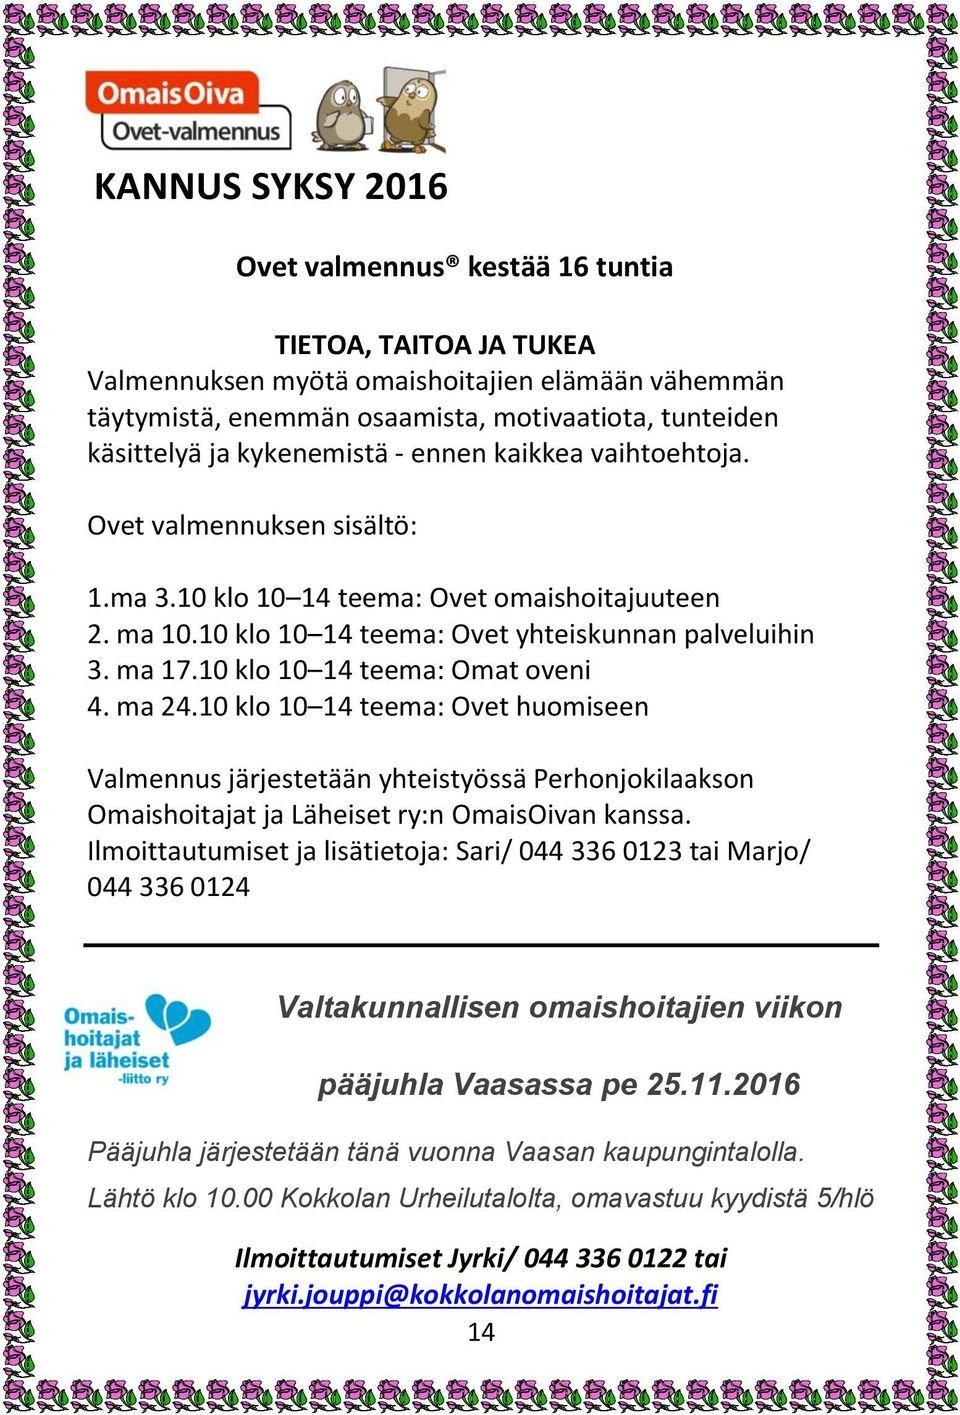 10 klo 10 14 teema: Omat oveni 4. ma 24.10 klo 10 14 teema: Ovet huomiseen Valmennus järjestetään yhteistyössä Perhonjokilaakson Omaishoitajat ja Läheiset ry:n OmaisOivan kanssa.